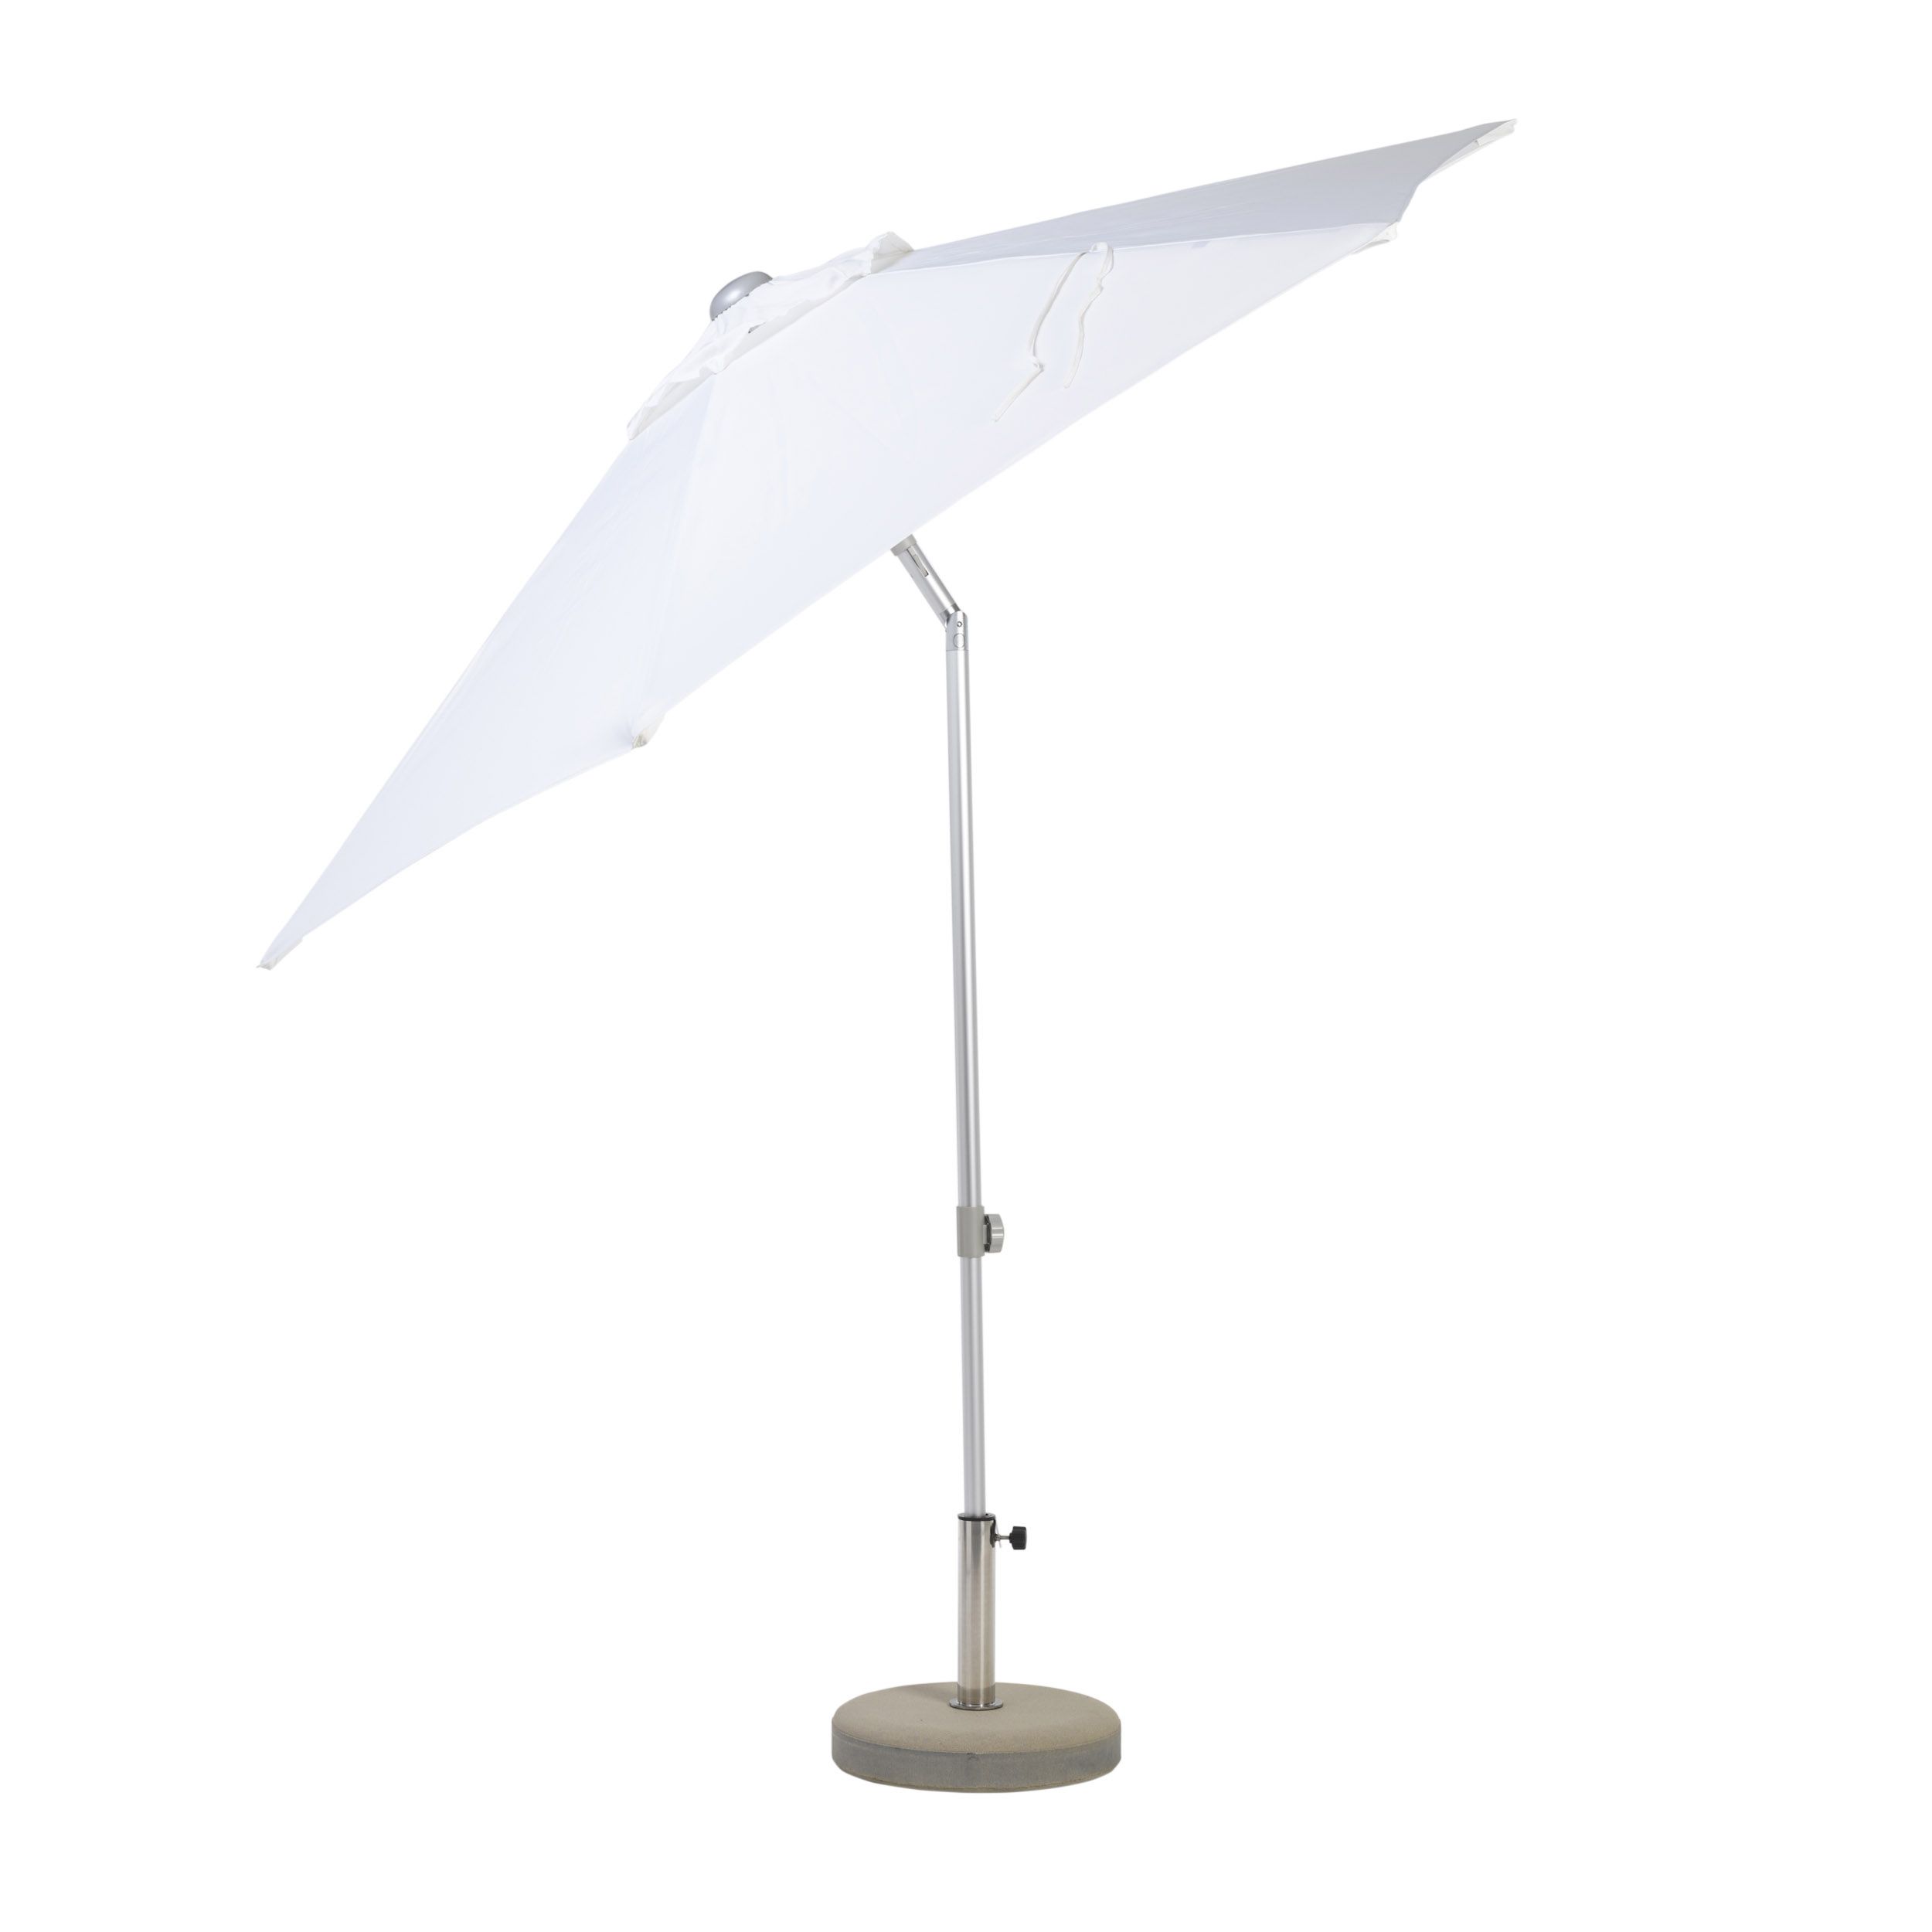 Parasol Elba rond avec articulation sans pied de parasol